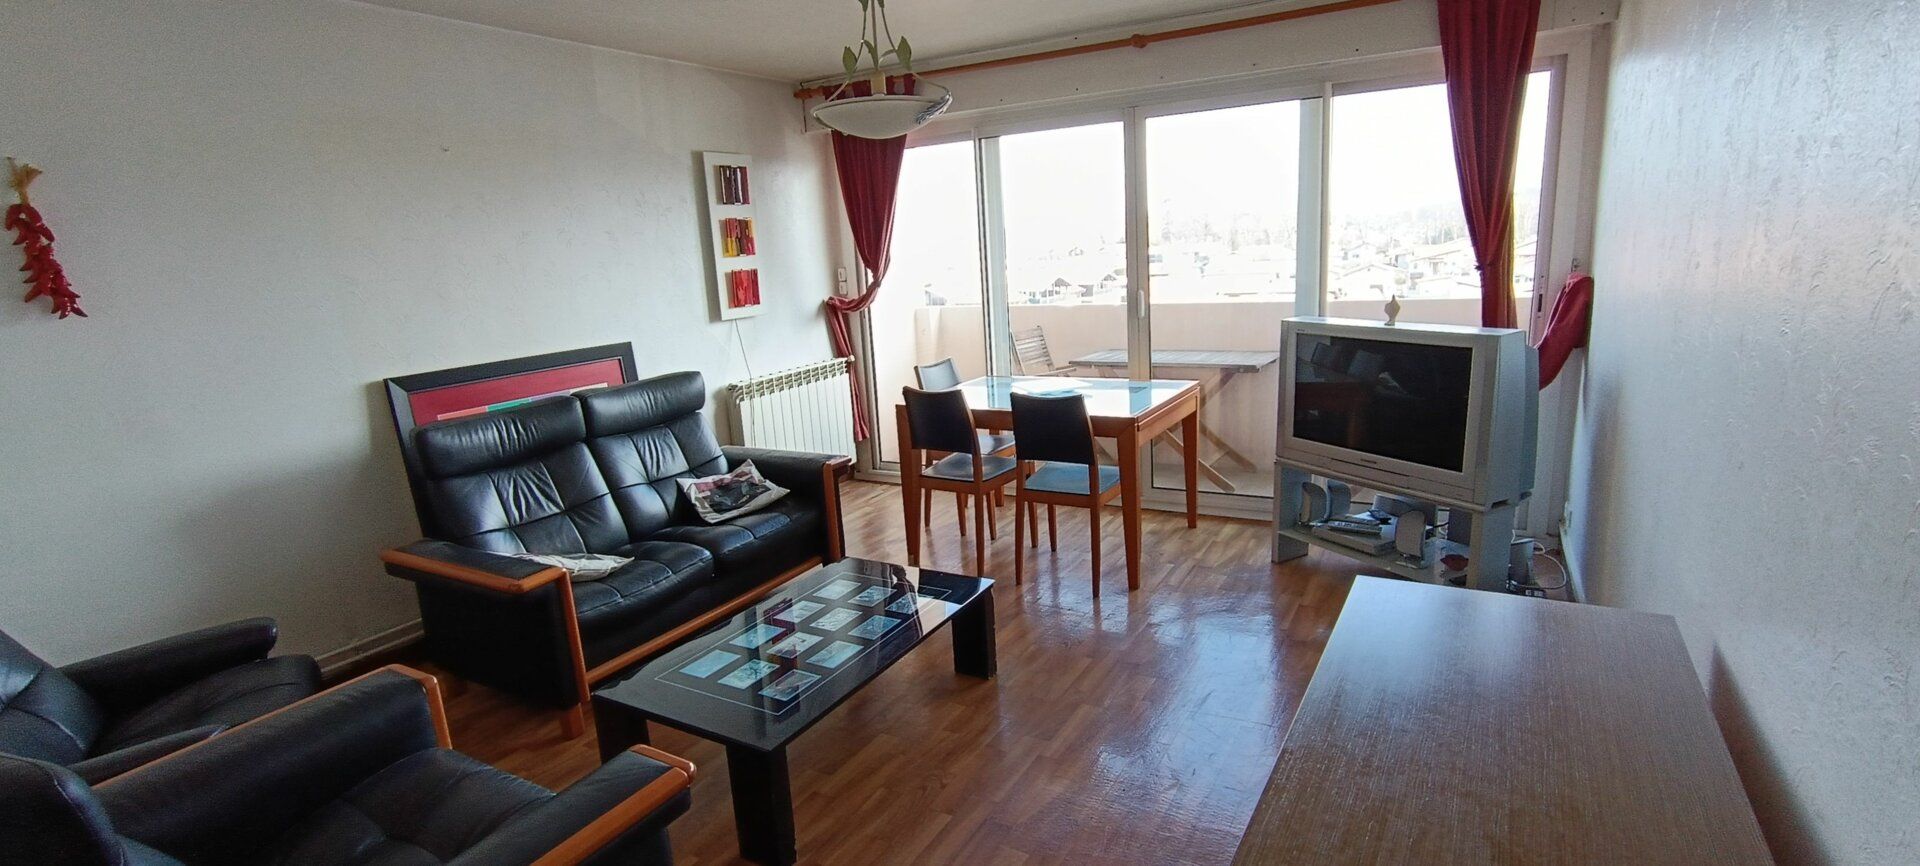 Appartement à vendre 4 72.68m2 à Saint-Pierre-d'Irube vignette-2